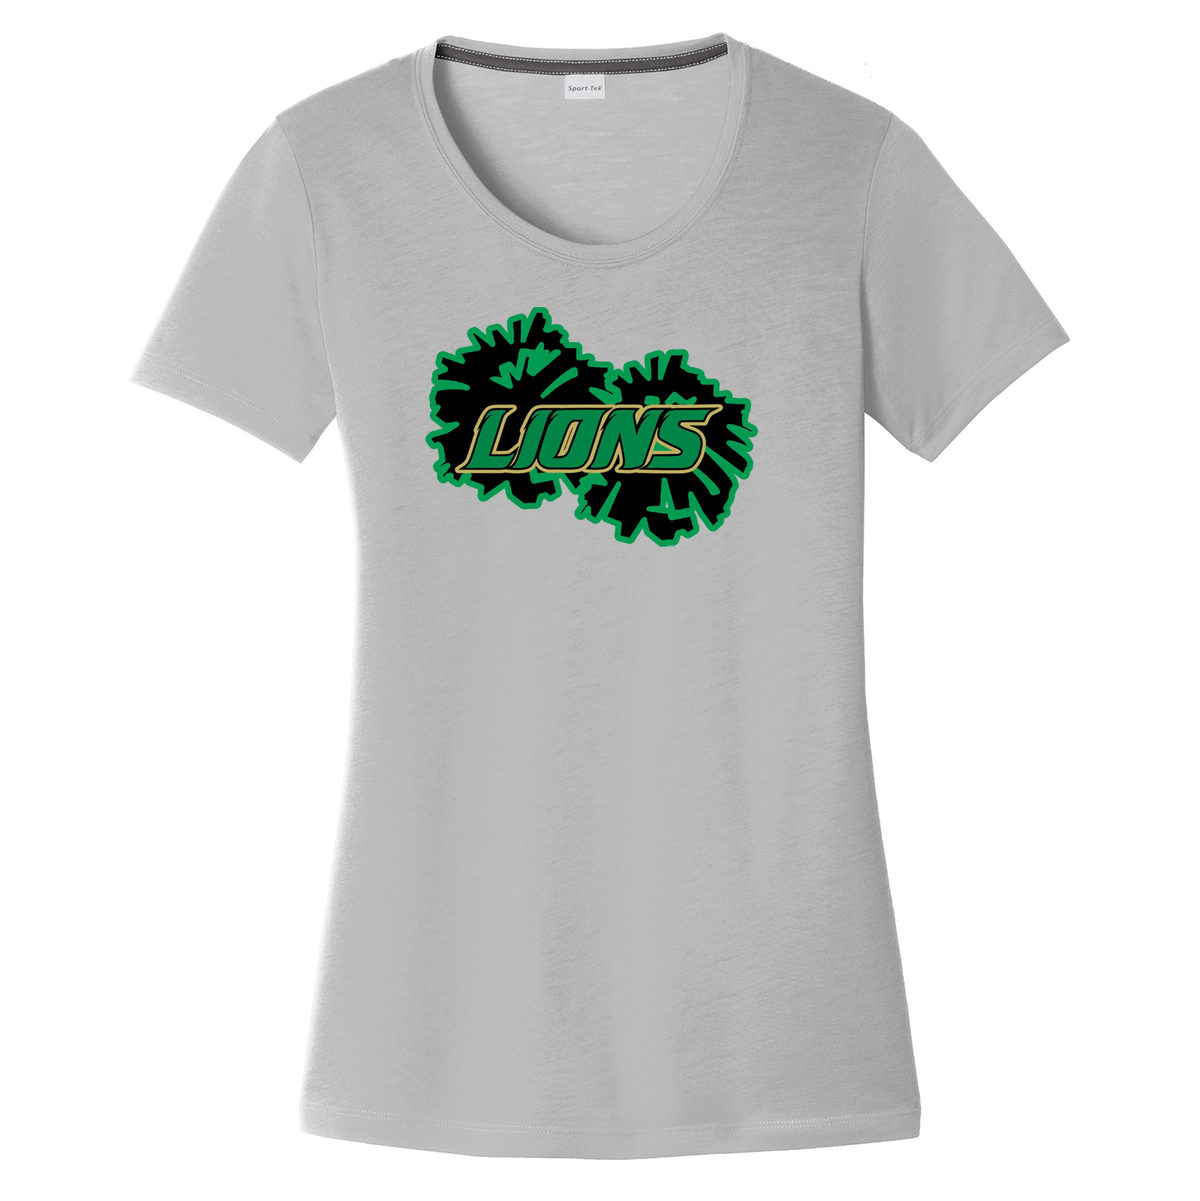 Lanierland Lions Cheer  Women's CottonTouch Performance T-Shirt